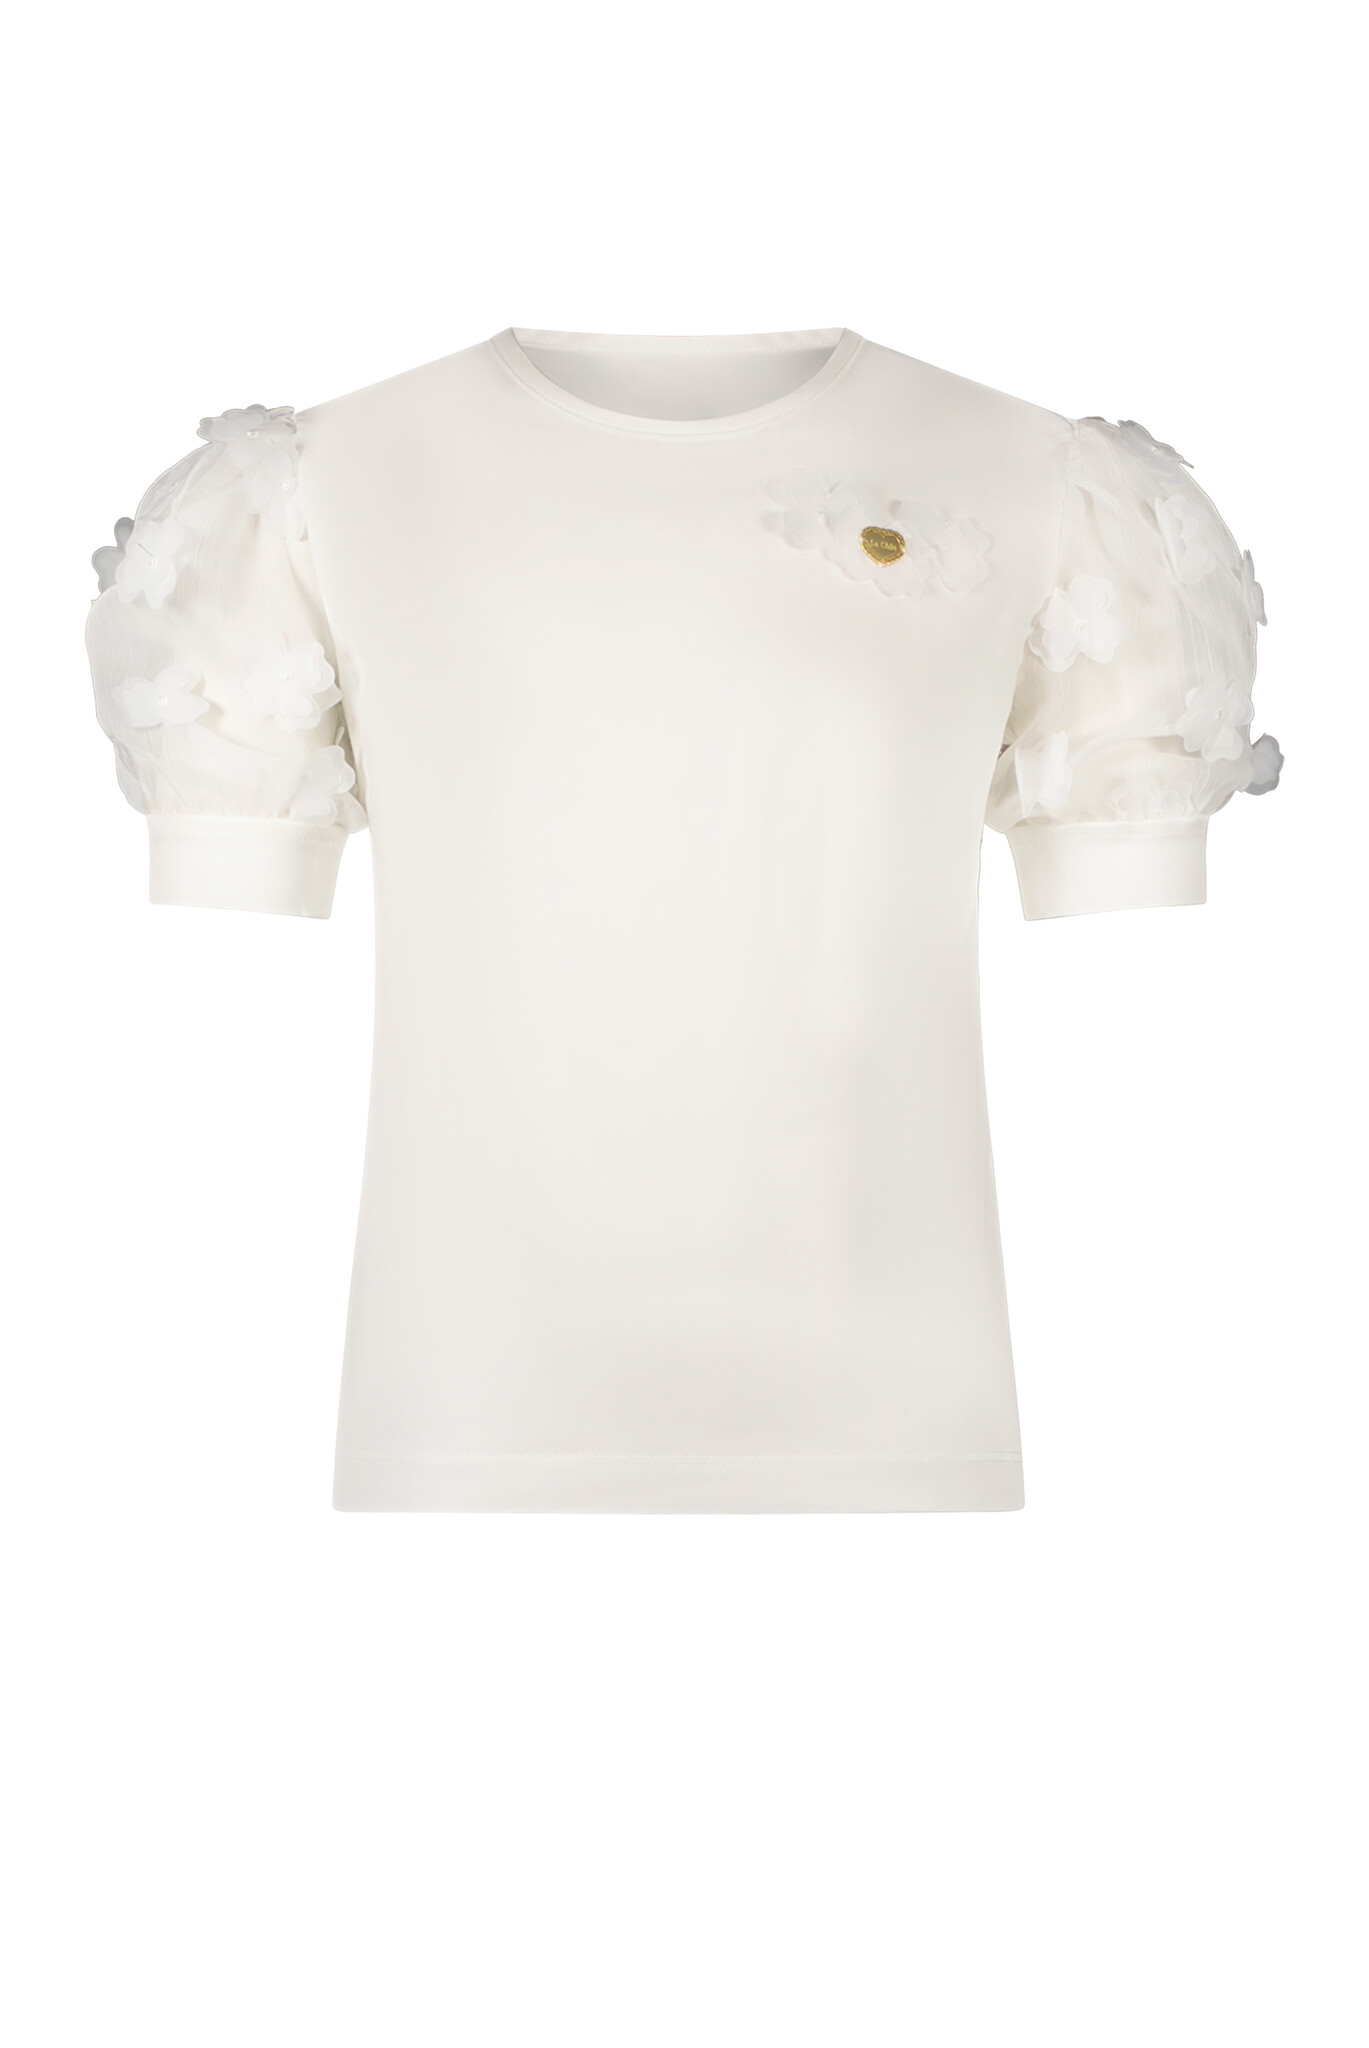 Le Chic C312-5400 Meisjes T-shirt - Off White - Maat 110